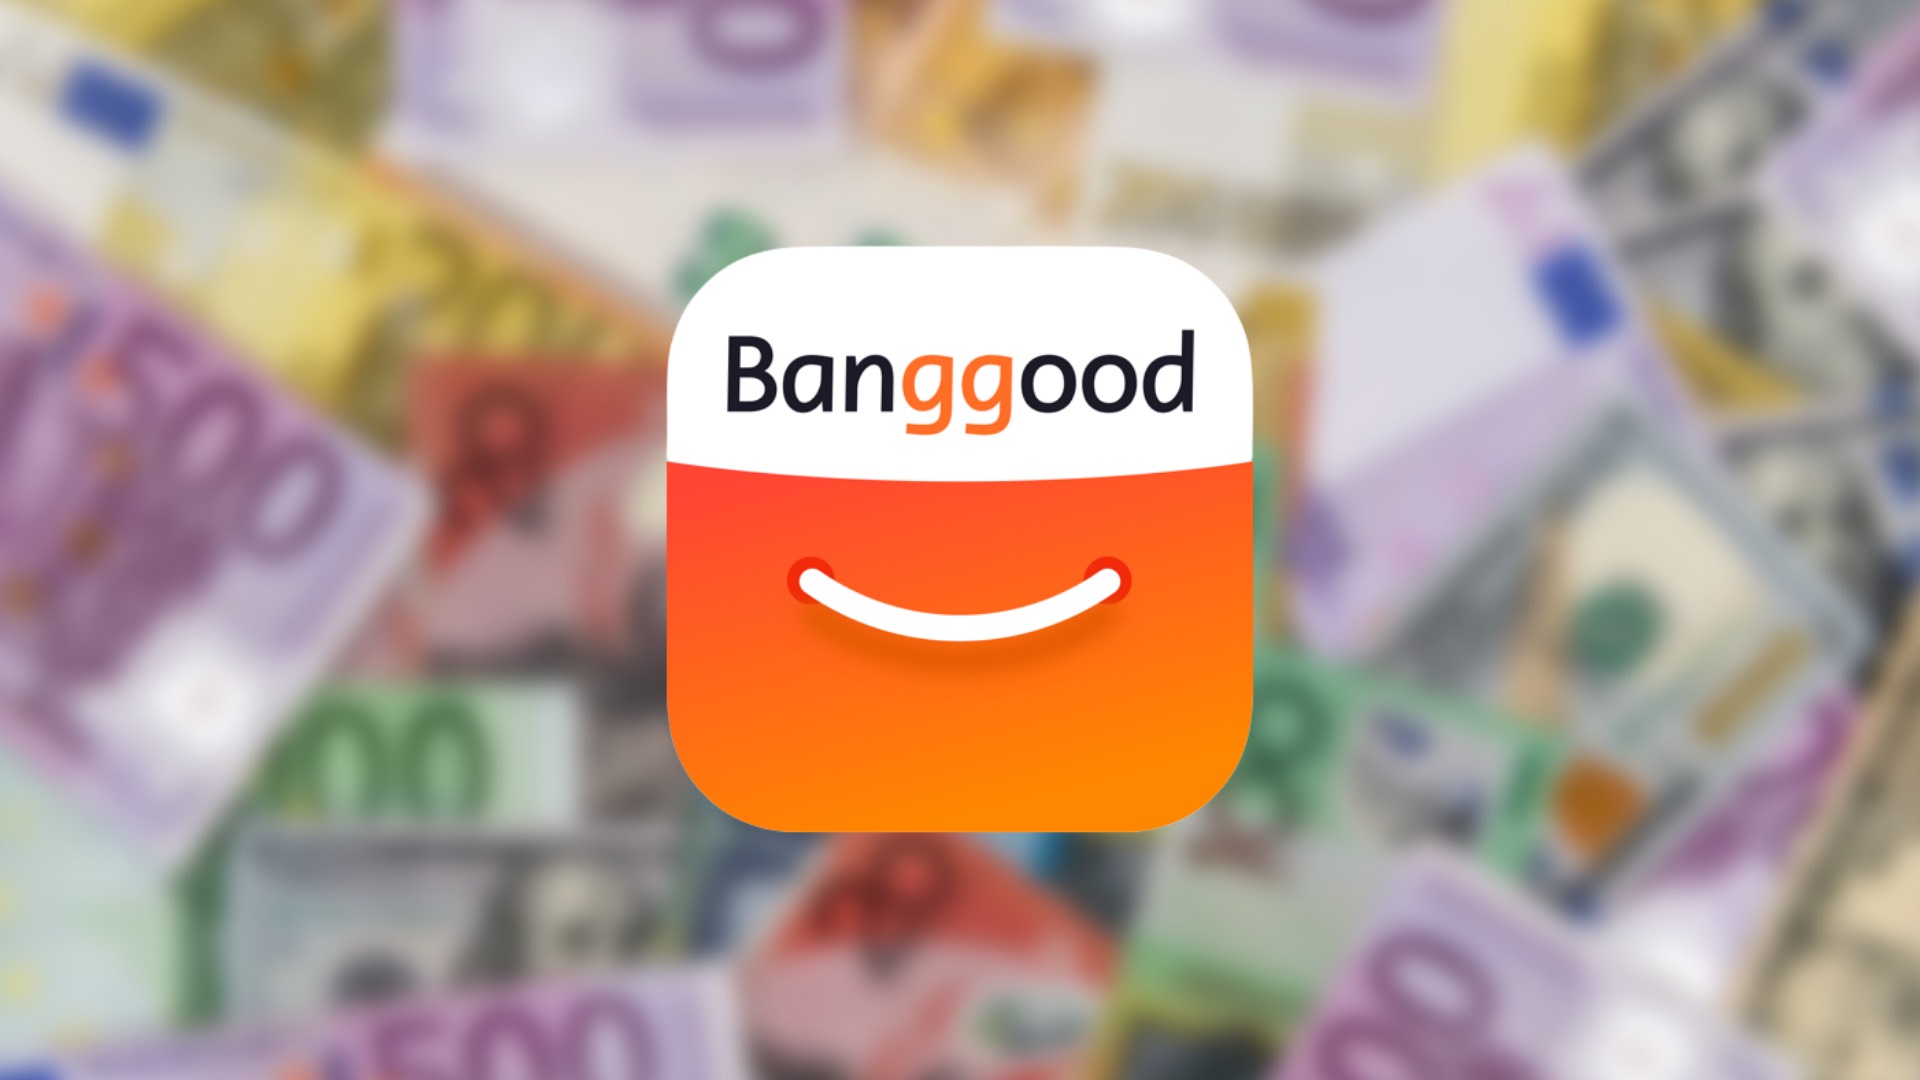 Ban good. Bangg. Banggood.